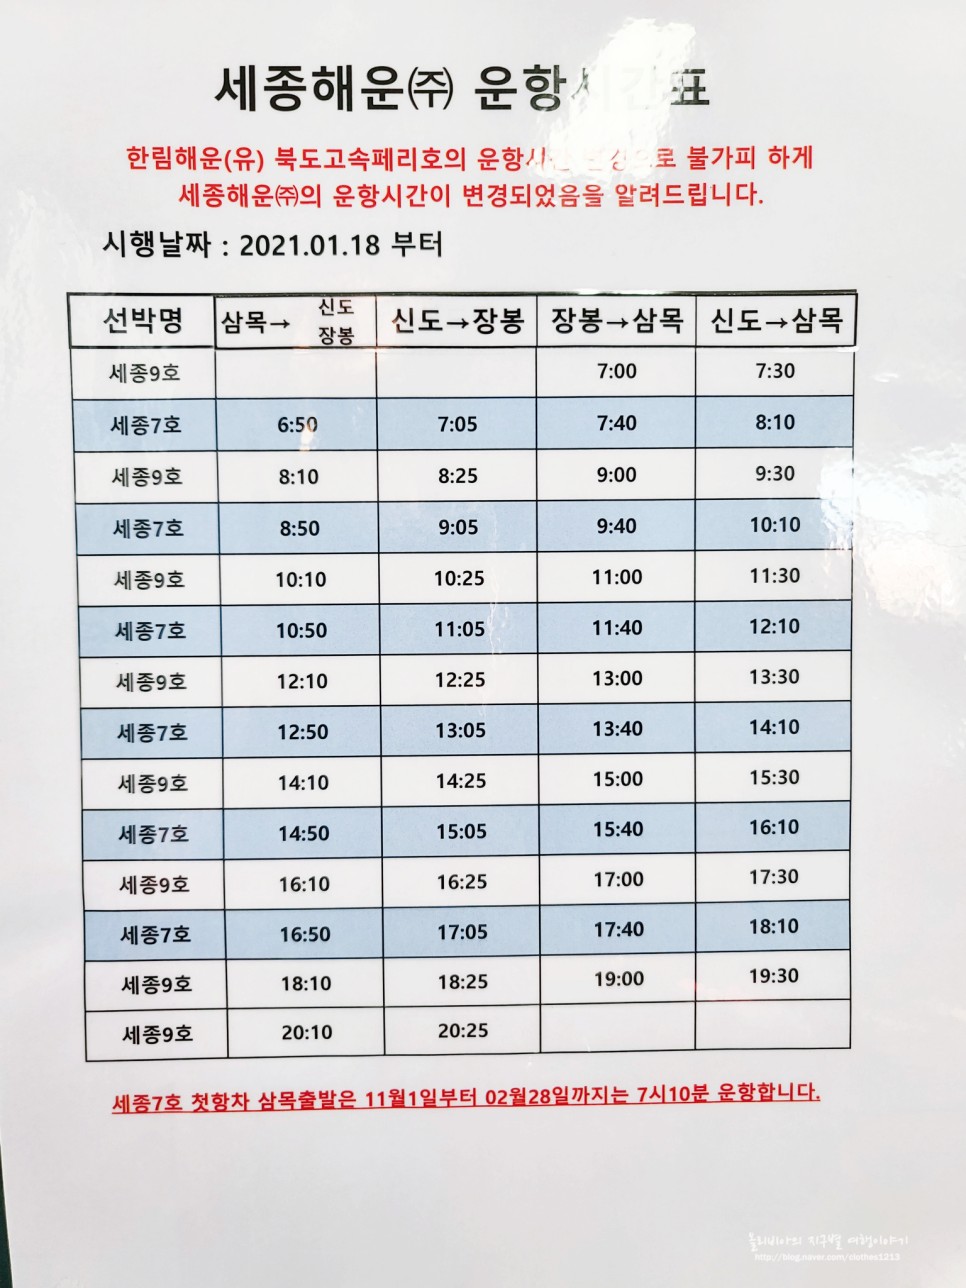 서울근교 당일치기 여행 장봉도 가는법 & 배시간 (ft.북적이지않아 좋다!)